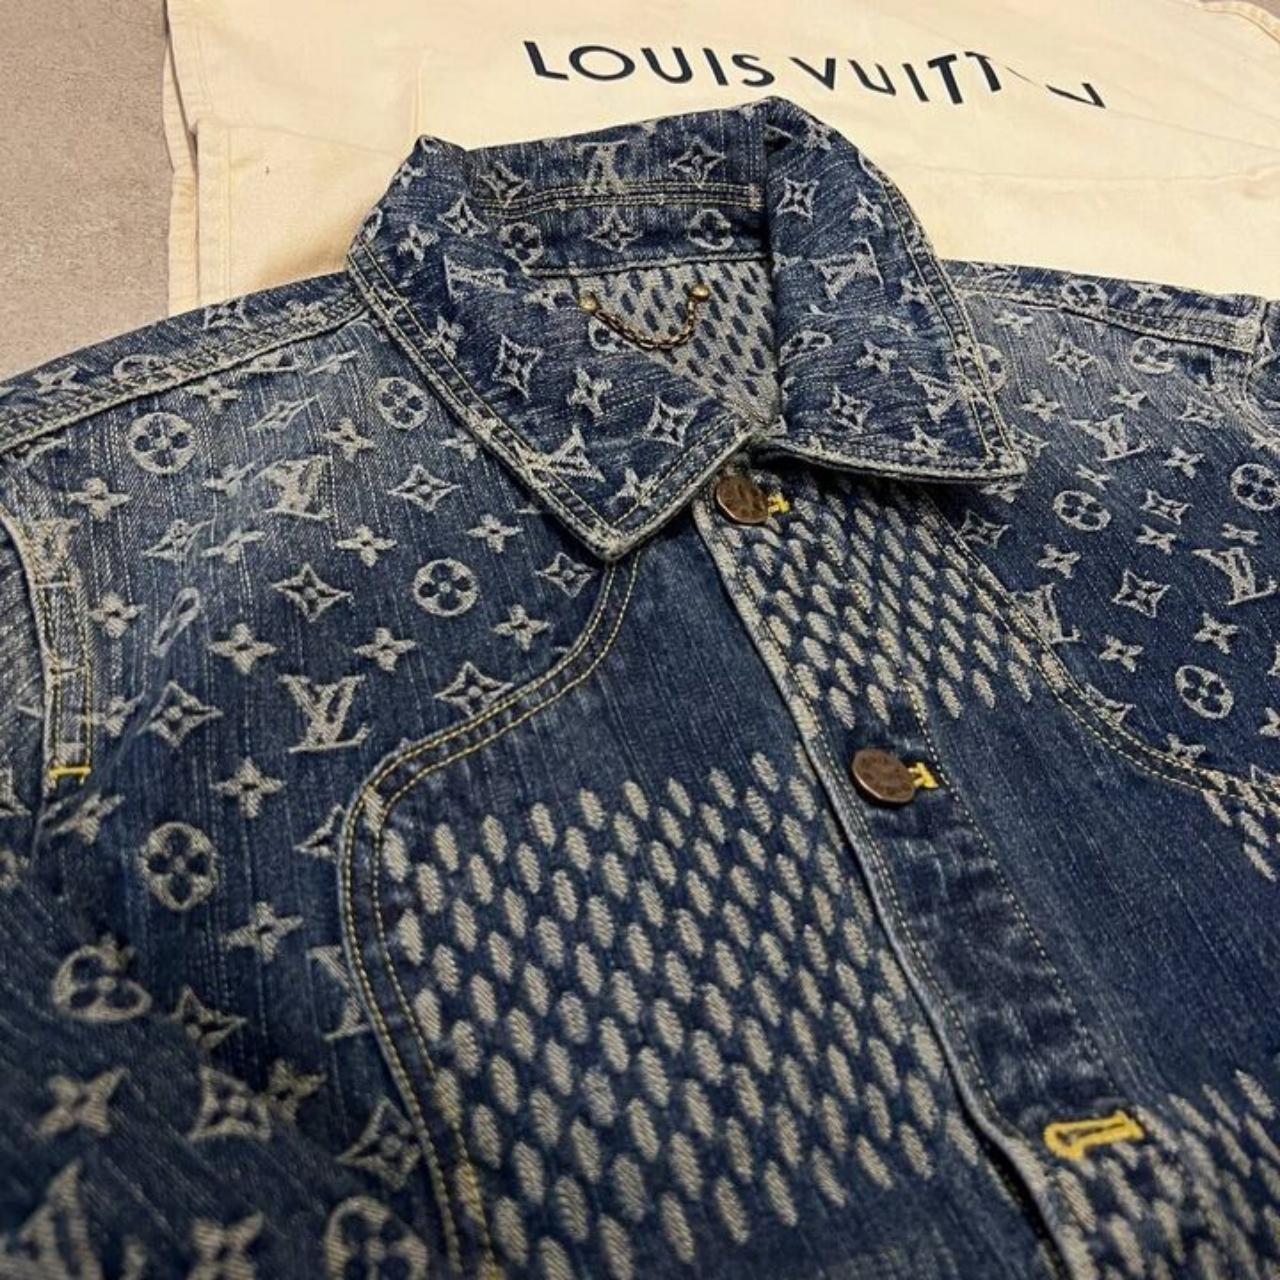 Louis Vuitton Windbreaker #louisvuitton #streetwear - Depop